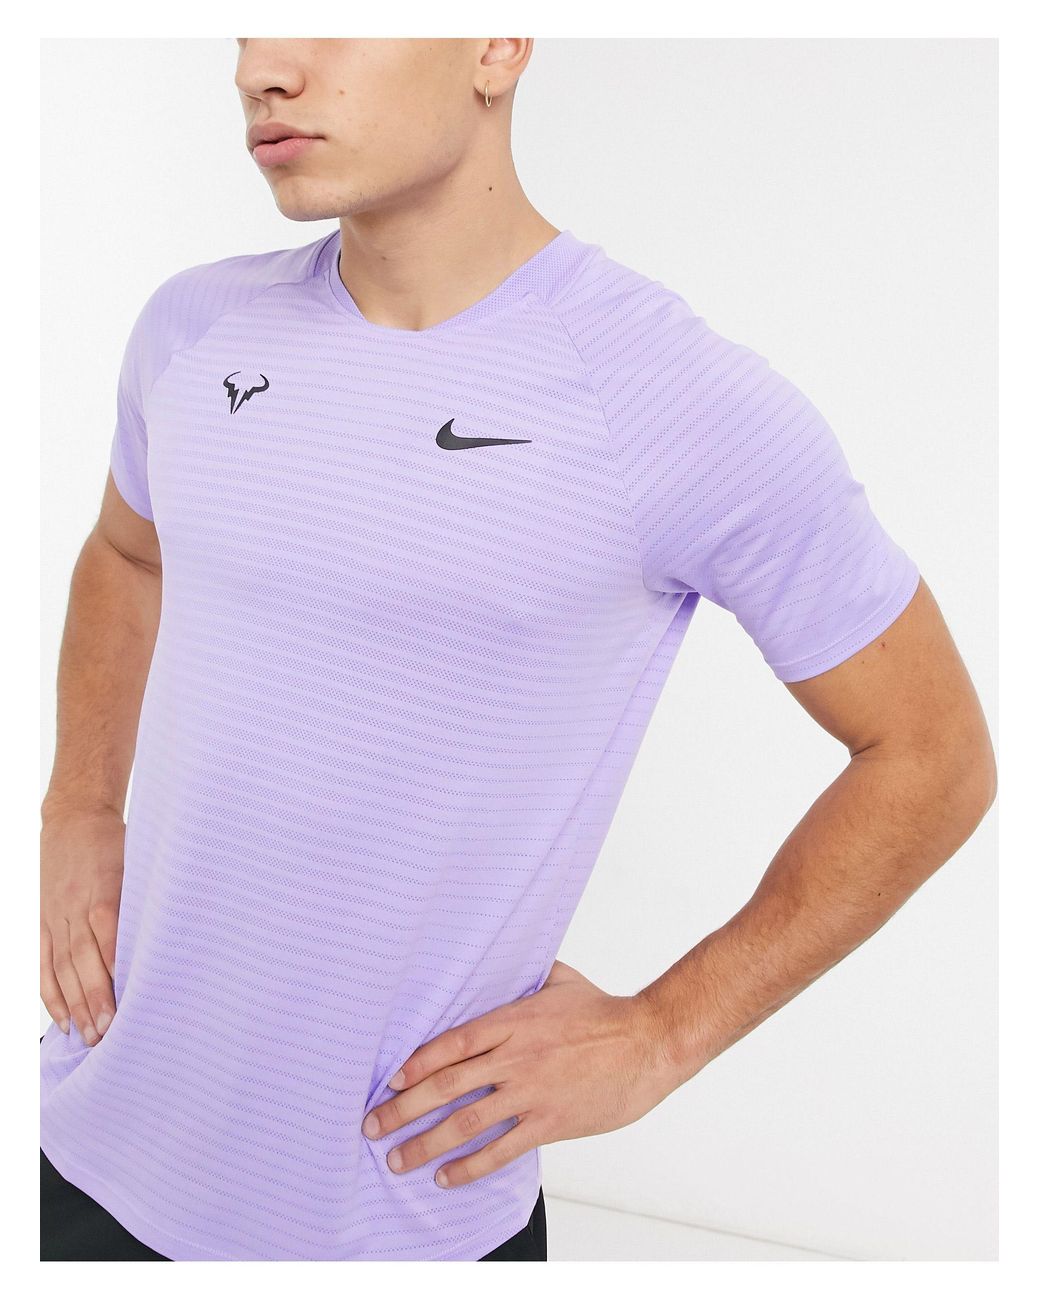 Camiseta rafael nadal court aeroreact slam Nike de hombre de color Morado |  Lyst